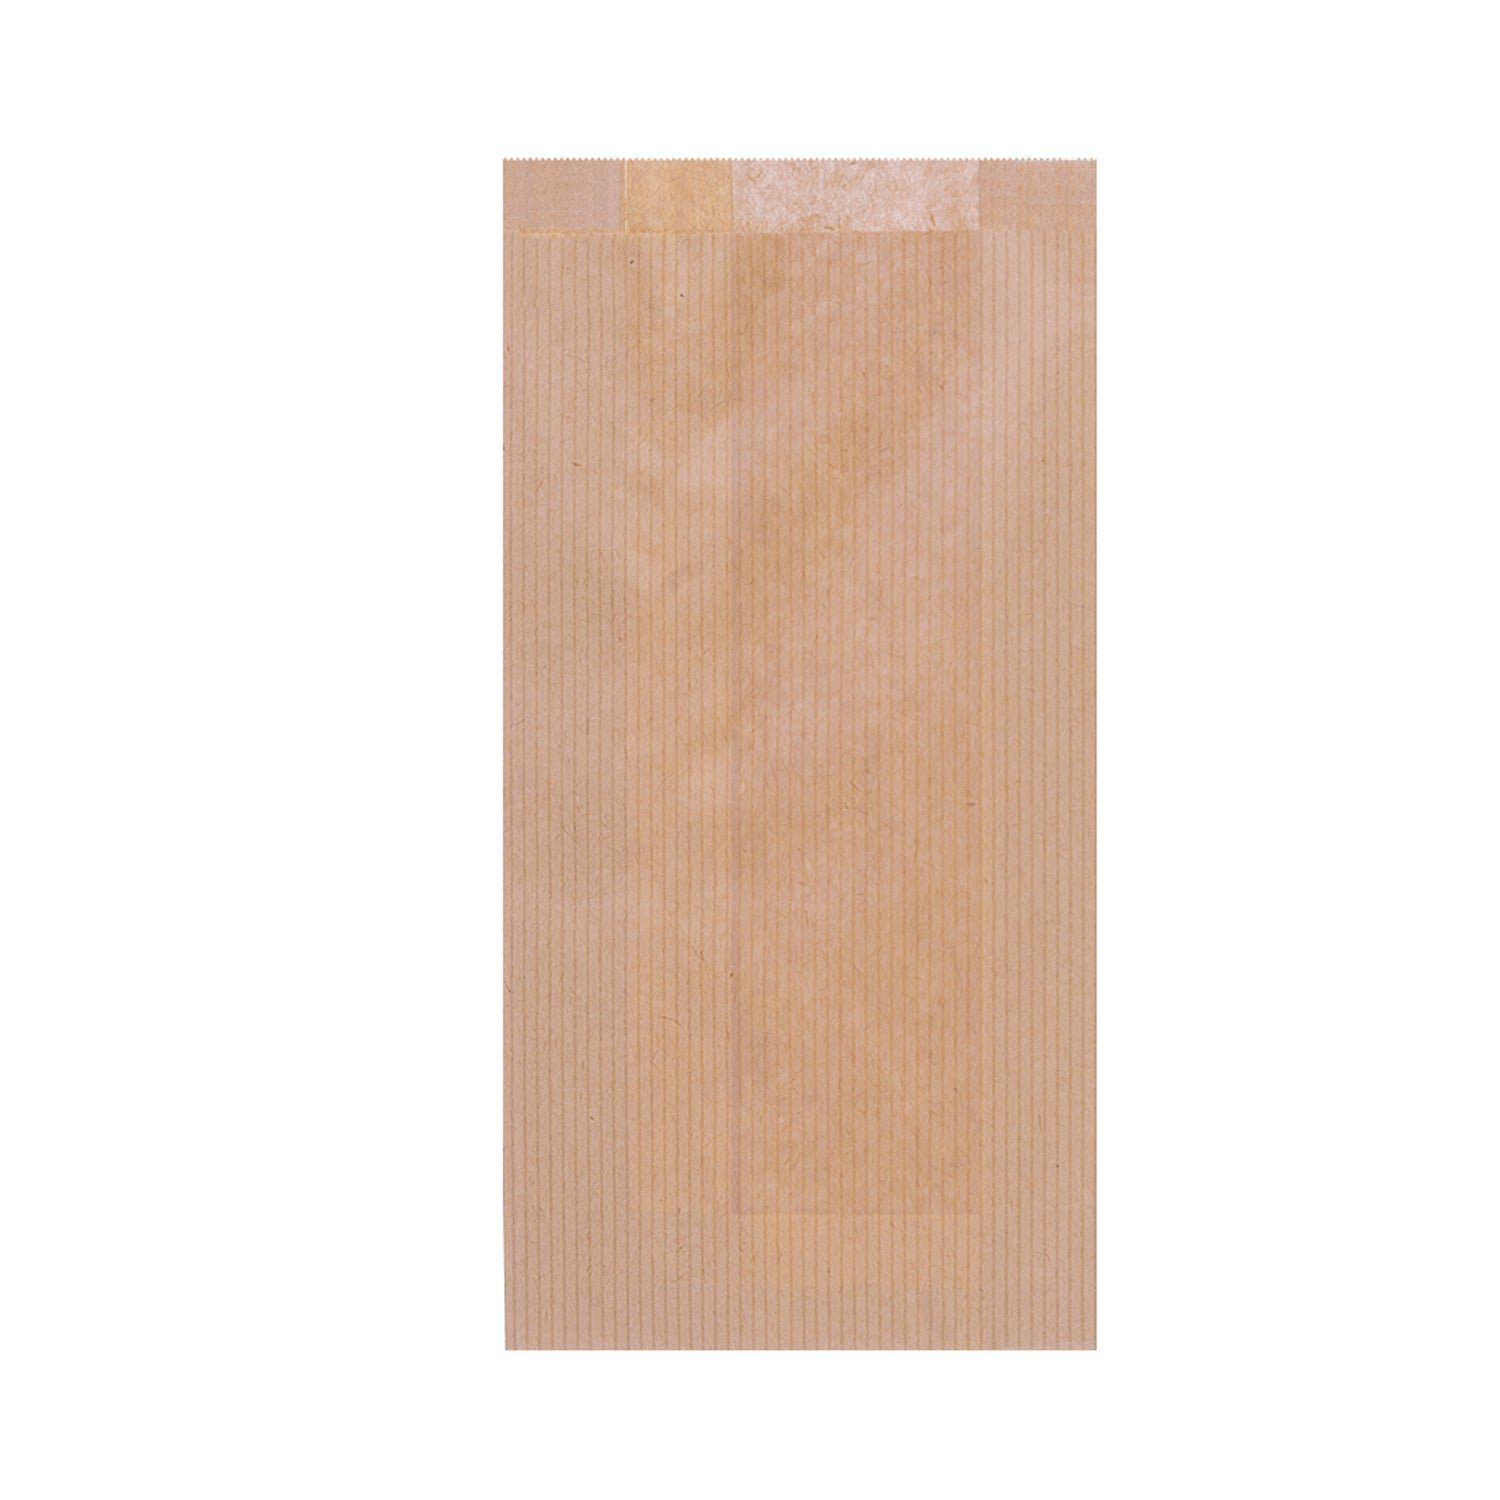 wisefood Einkaufsbeutel Papier Bäckertüte - braun 20 x 7 x 42 cm